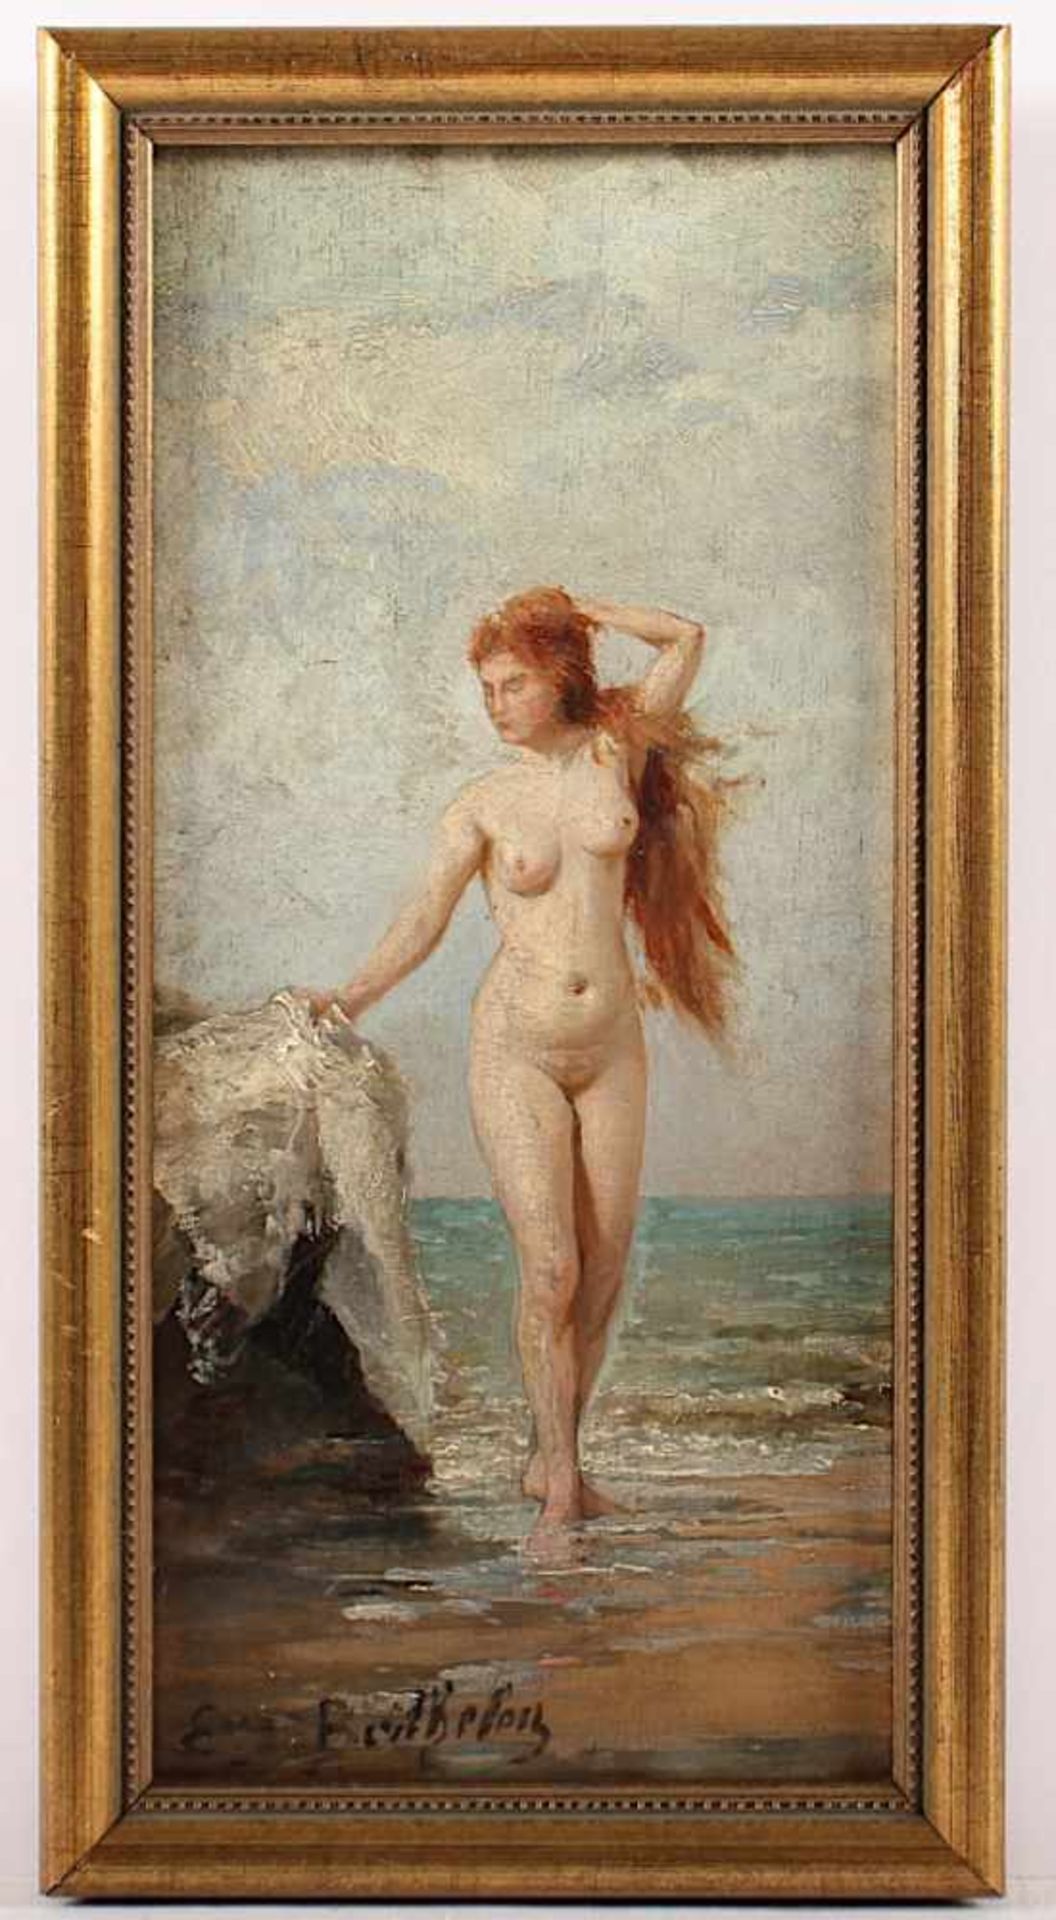 BERTHELEN, E. (Maler um 1900), "Weiblicher Akt", Öl/Holz, 24 x 11,5, unten links signiert, R. - Image 2 of 3